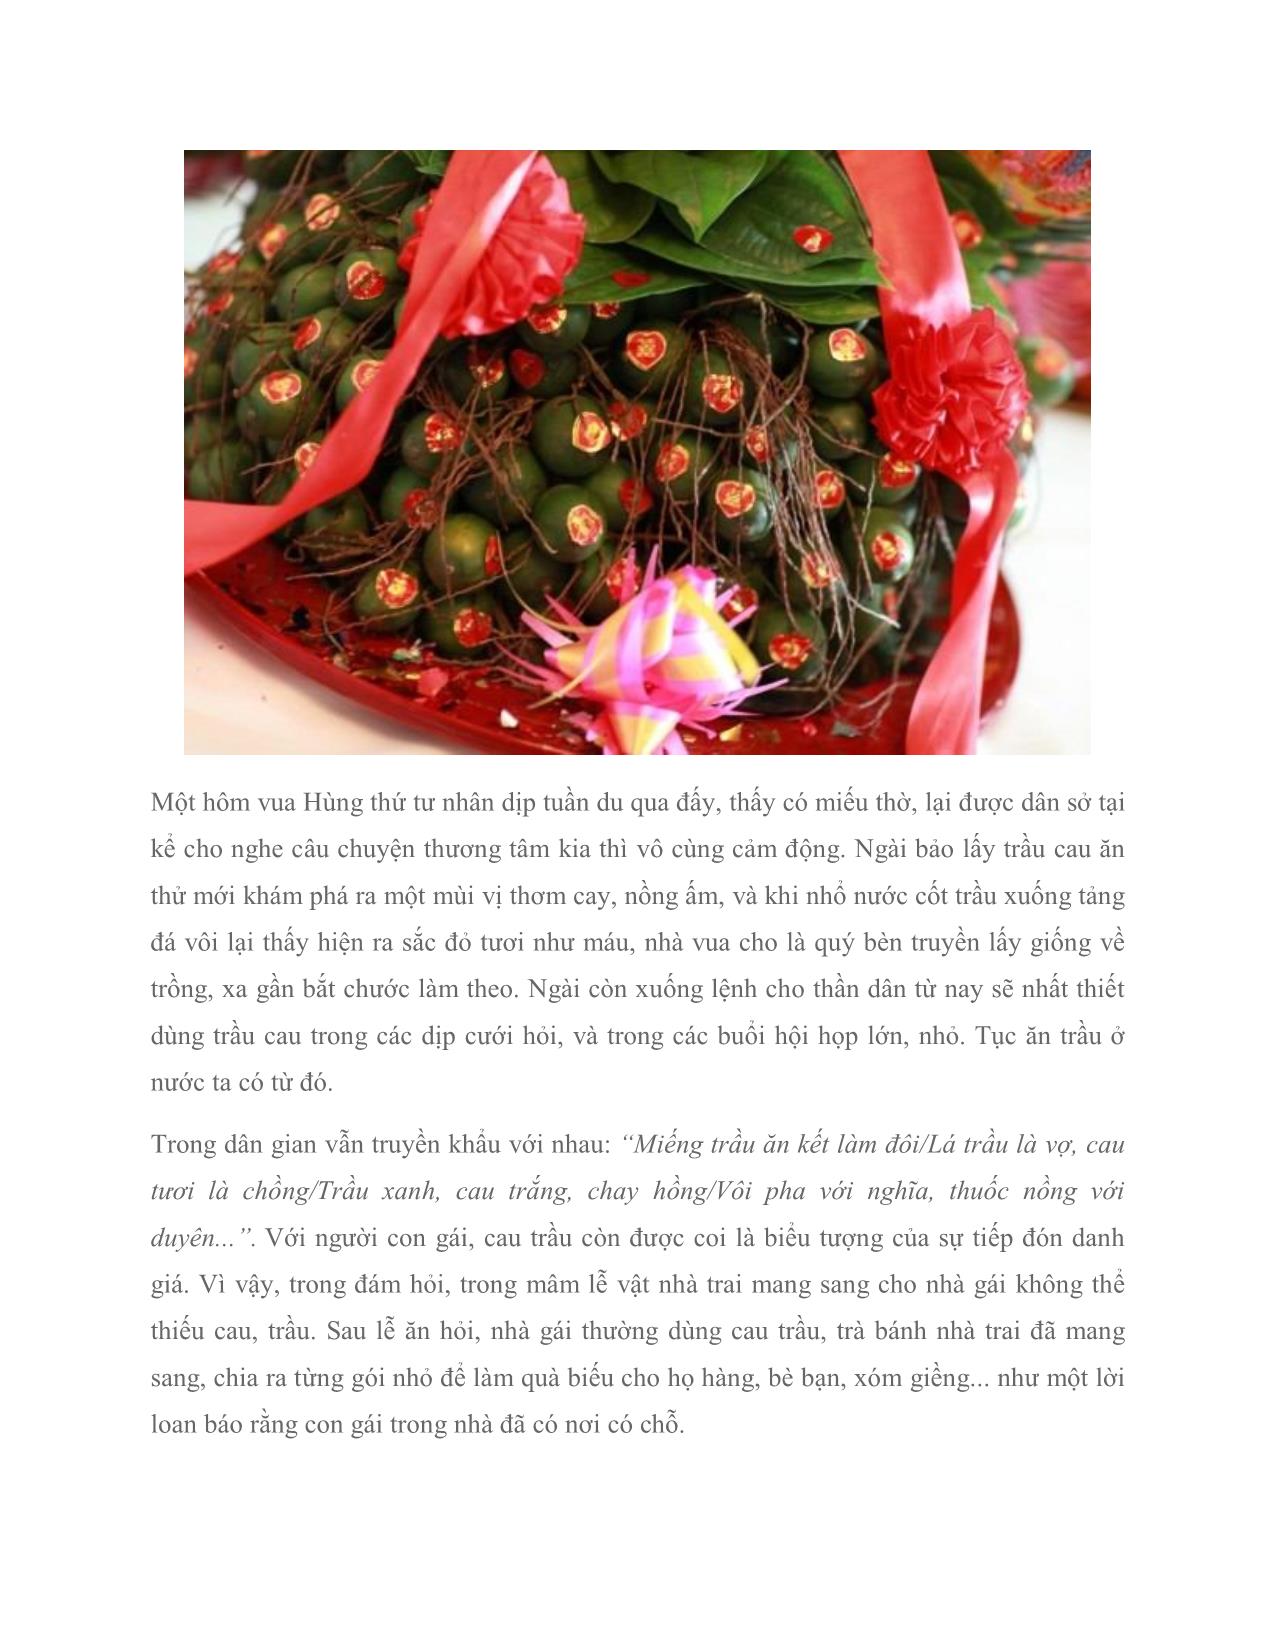 Trầu cau – lễ vật không thể thiếu trong cưới hỏi người Việt trang 3